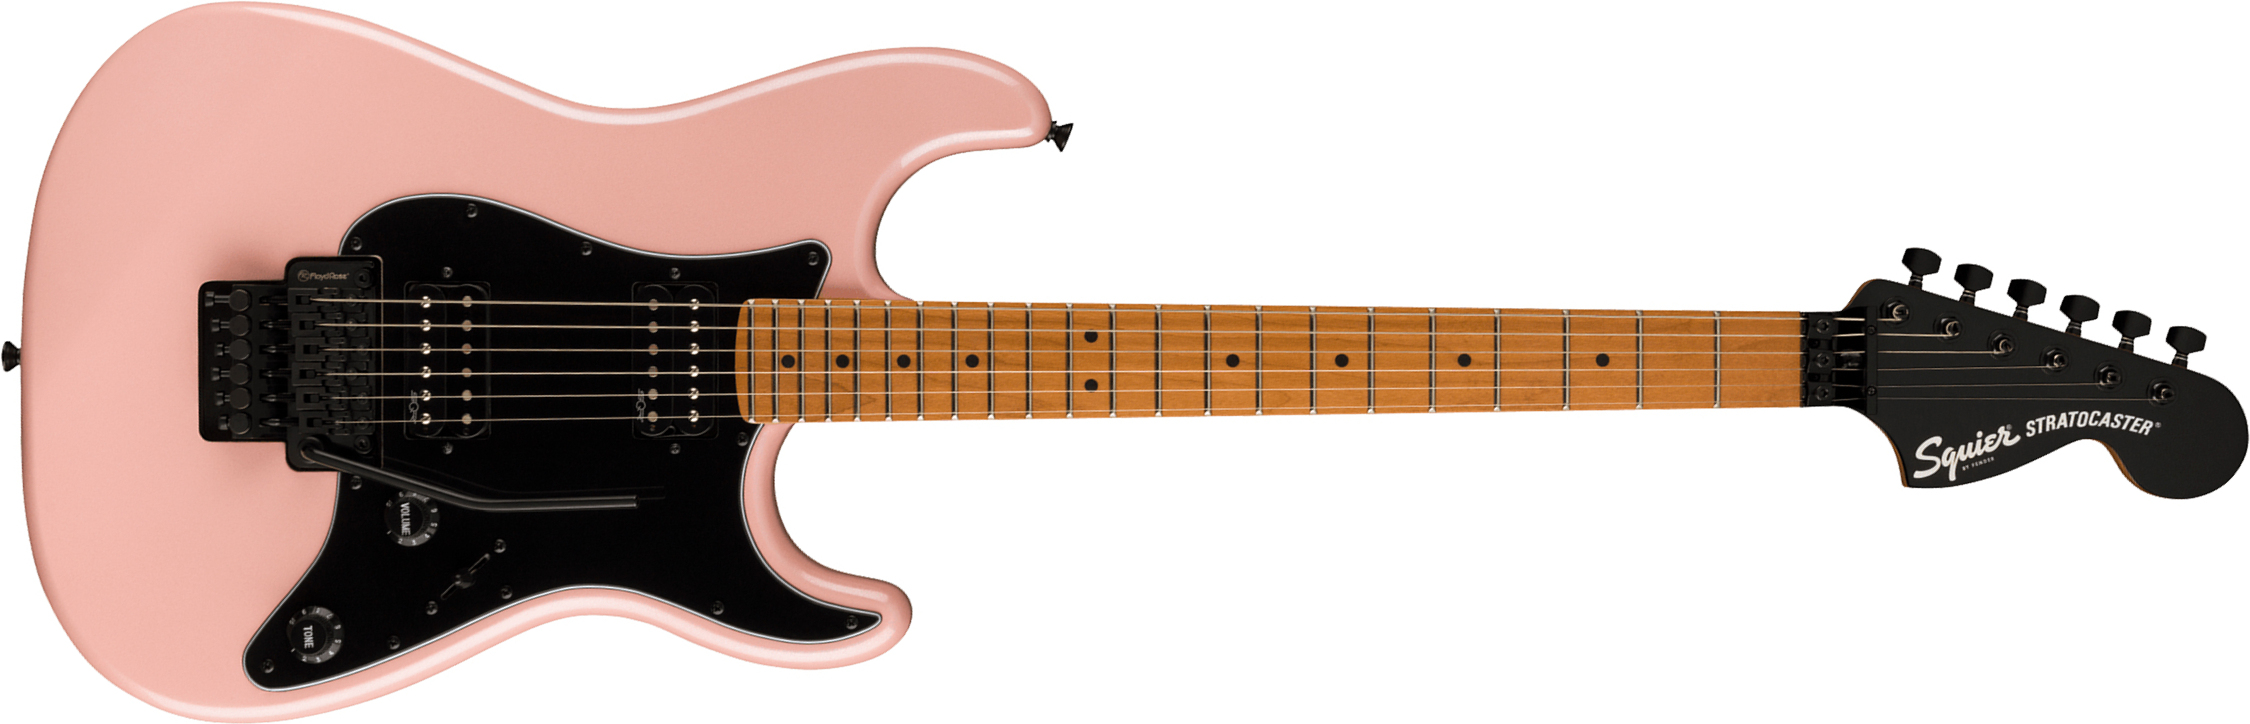 Squier Strat Contemporary Hh Fr Mn - Shell Pink Pearl - Elektrische gitaar in Str-vorm - Main picture